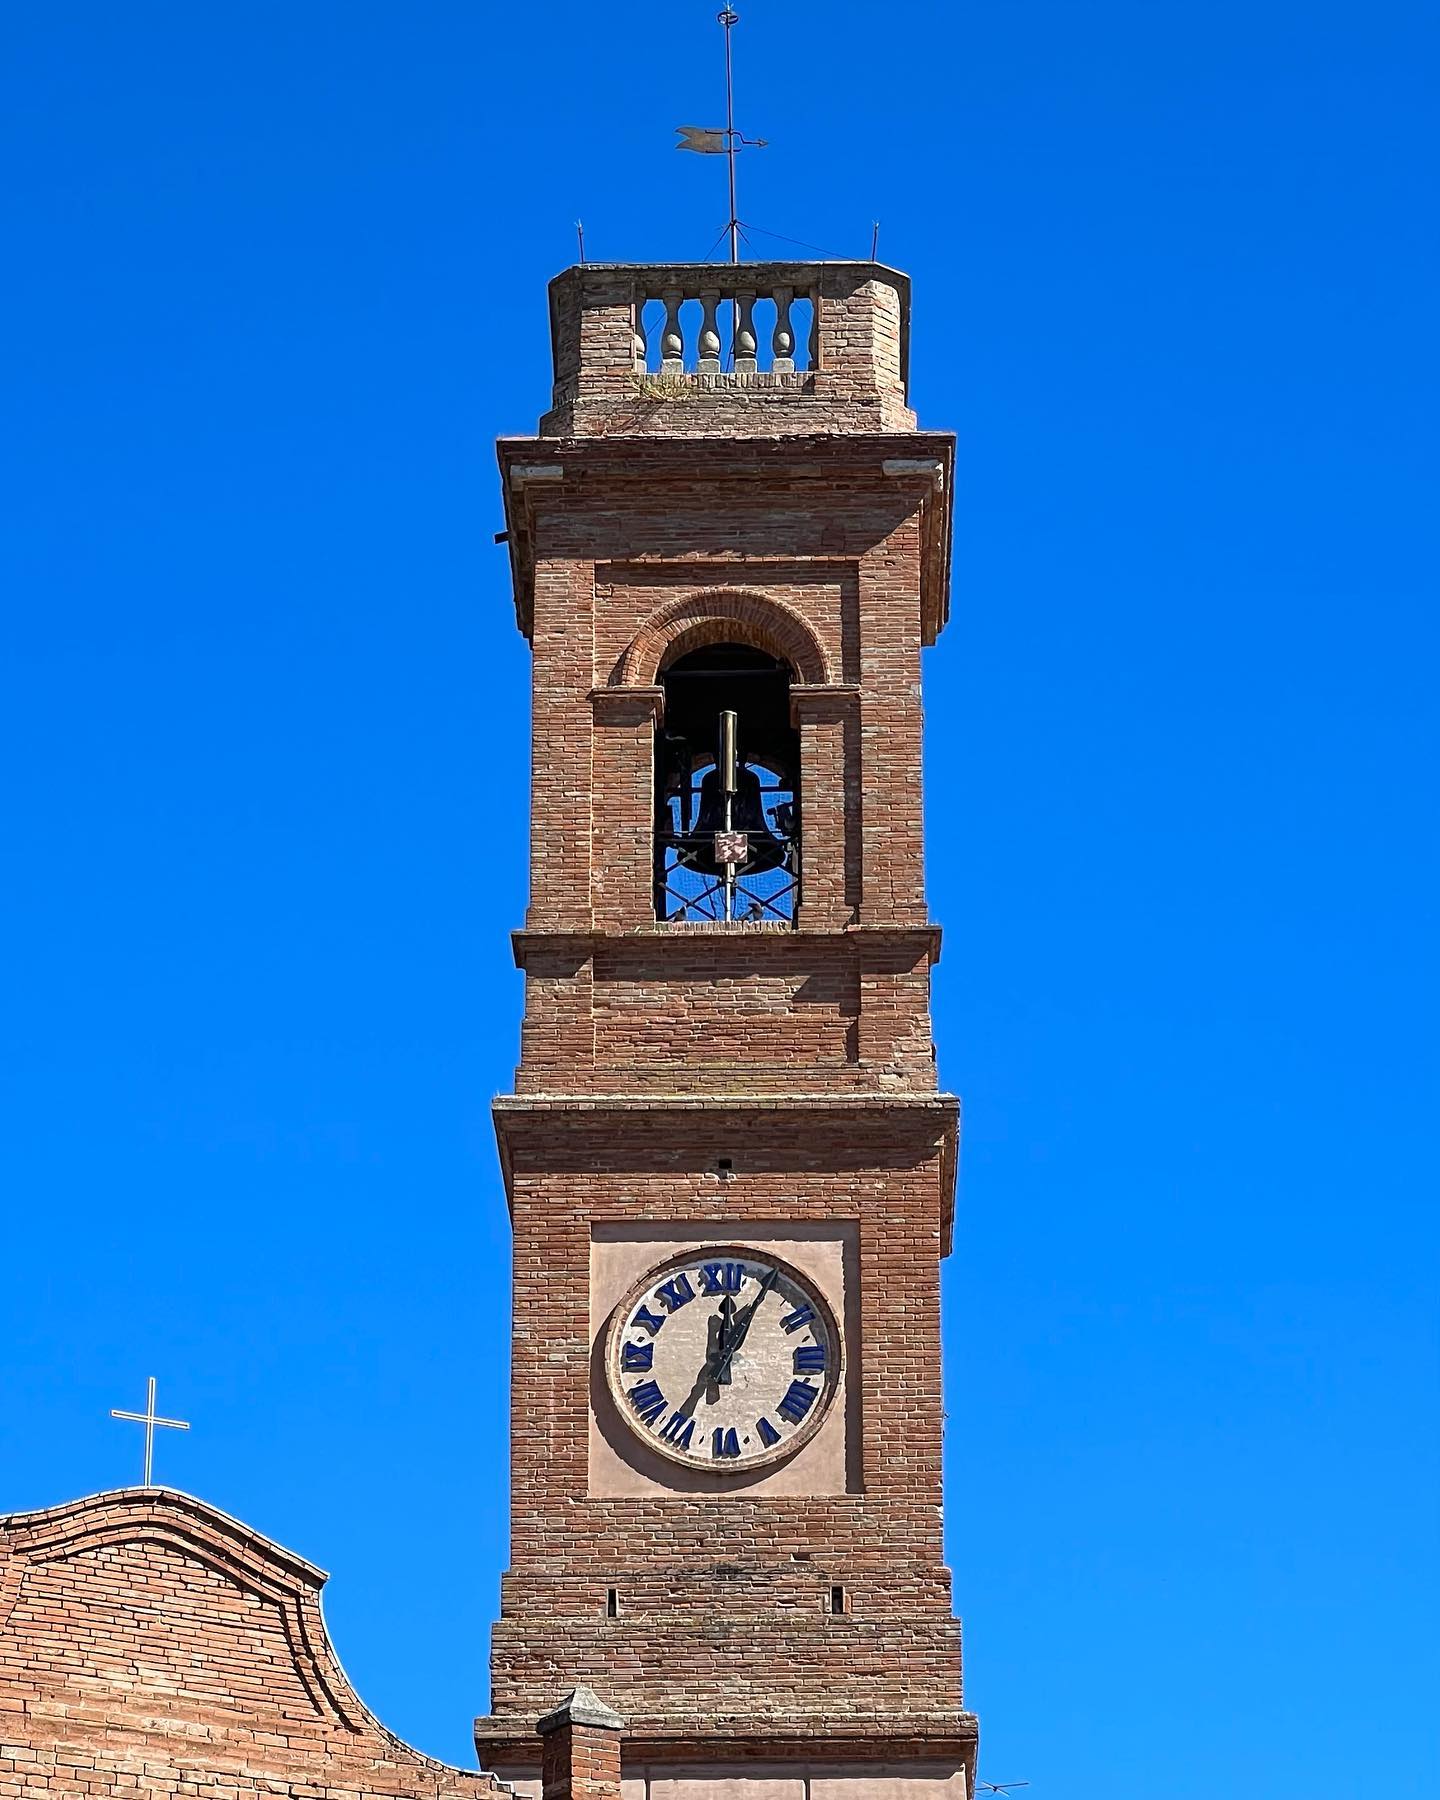 🔹L’azzurro meraviglioso dietro la Torre Civica.
📍Sogliano al Rubicone (FC)
.
#nofilters #nofilterneeded 
#soglianoalrubicone 
#visitsoglianoalrubicone 
#cielo #fineestate 
#romagna #romagnamia